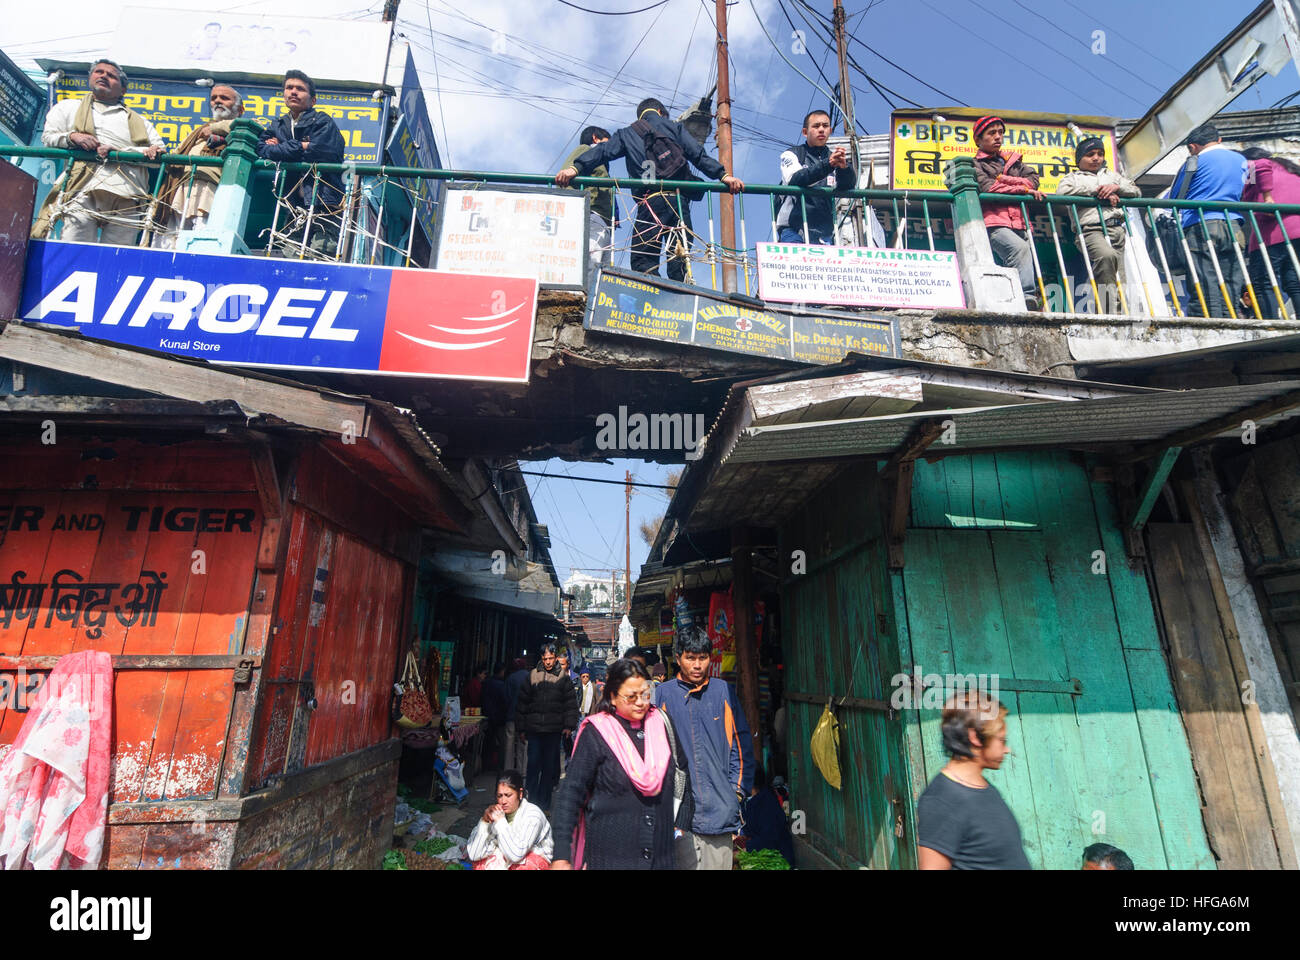 Darjeeling: Chowk Bazar, West Bengal, Westbengalen, India Foto Stock